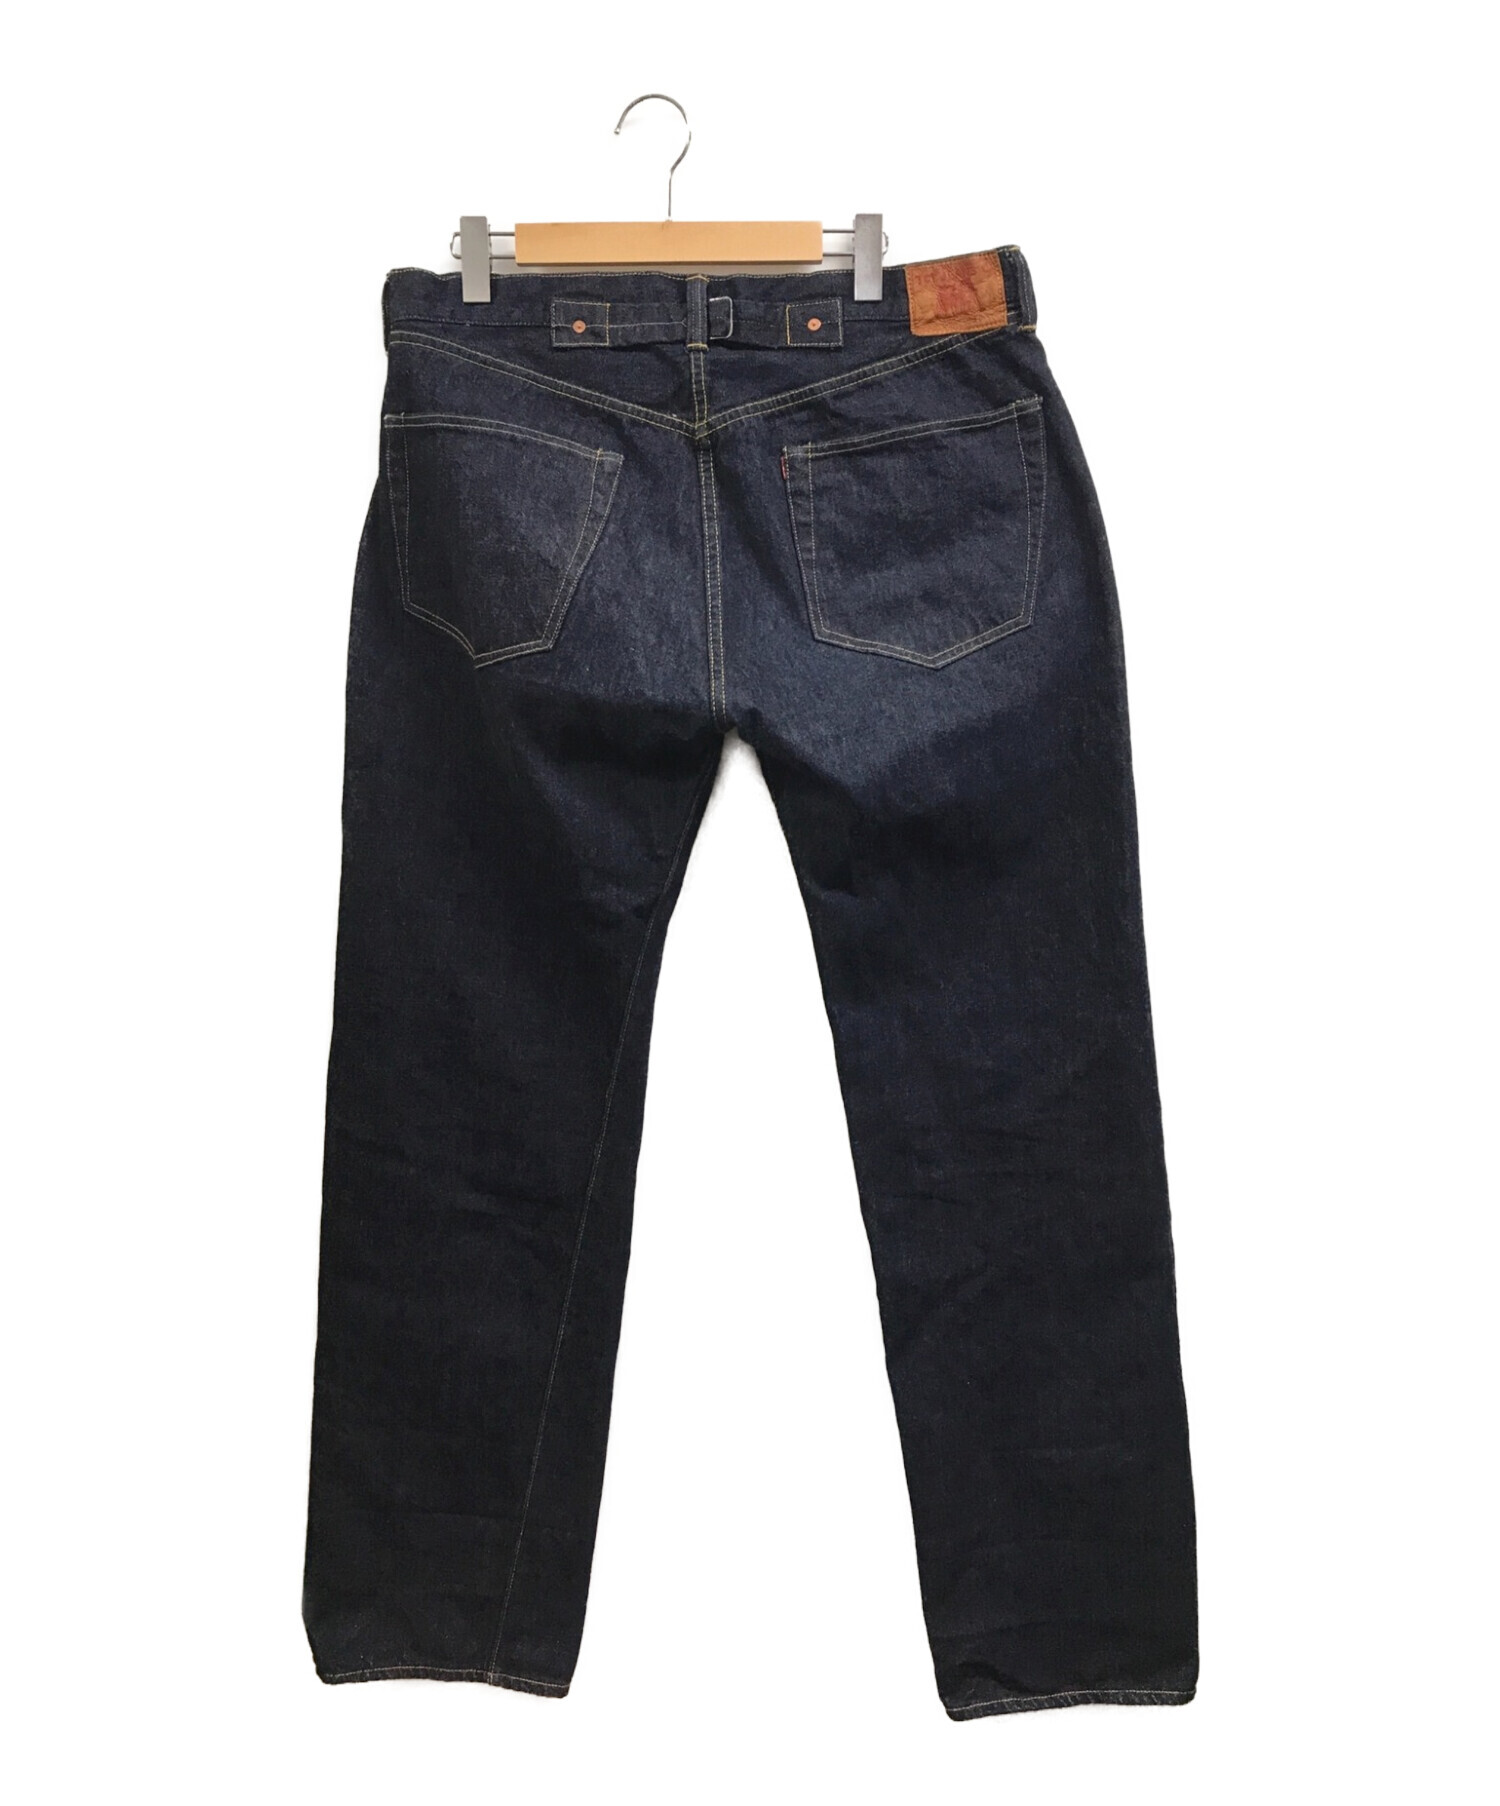 TCB jeans (ティーシービー ジーンズ) シンチバック付きセルビッチデニムパンツ インディゴ サイズ:W40